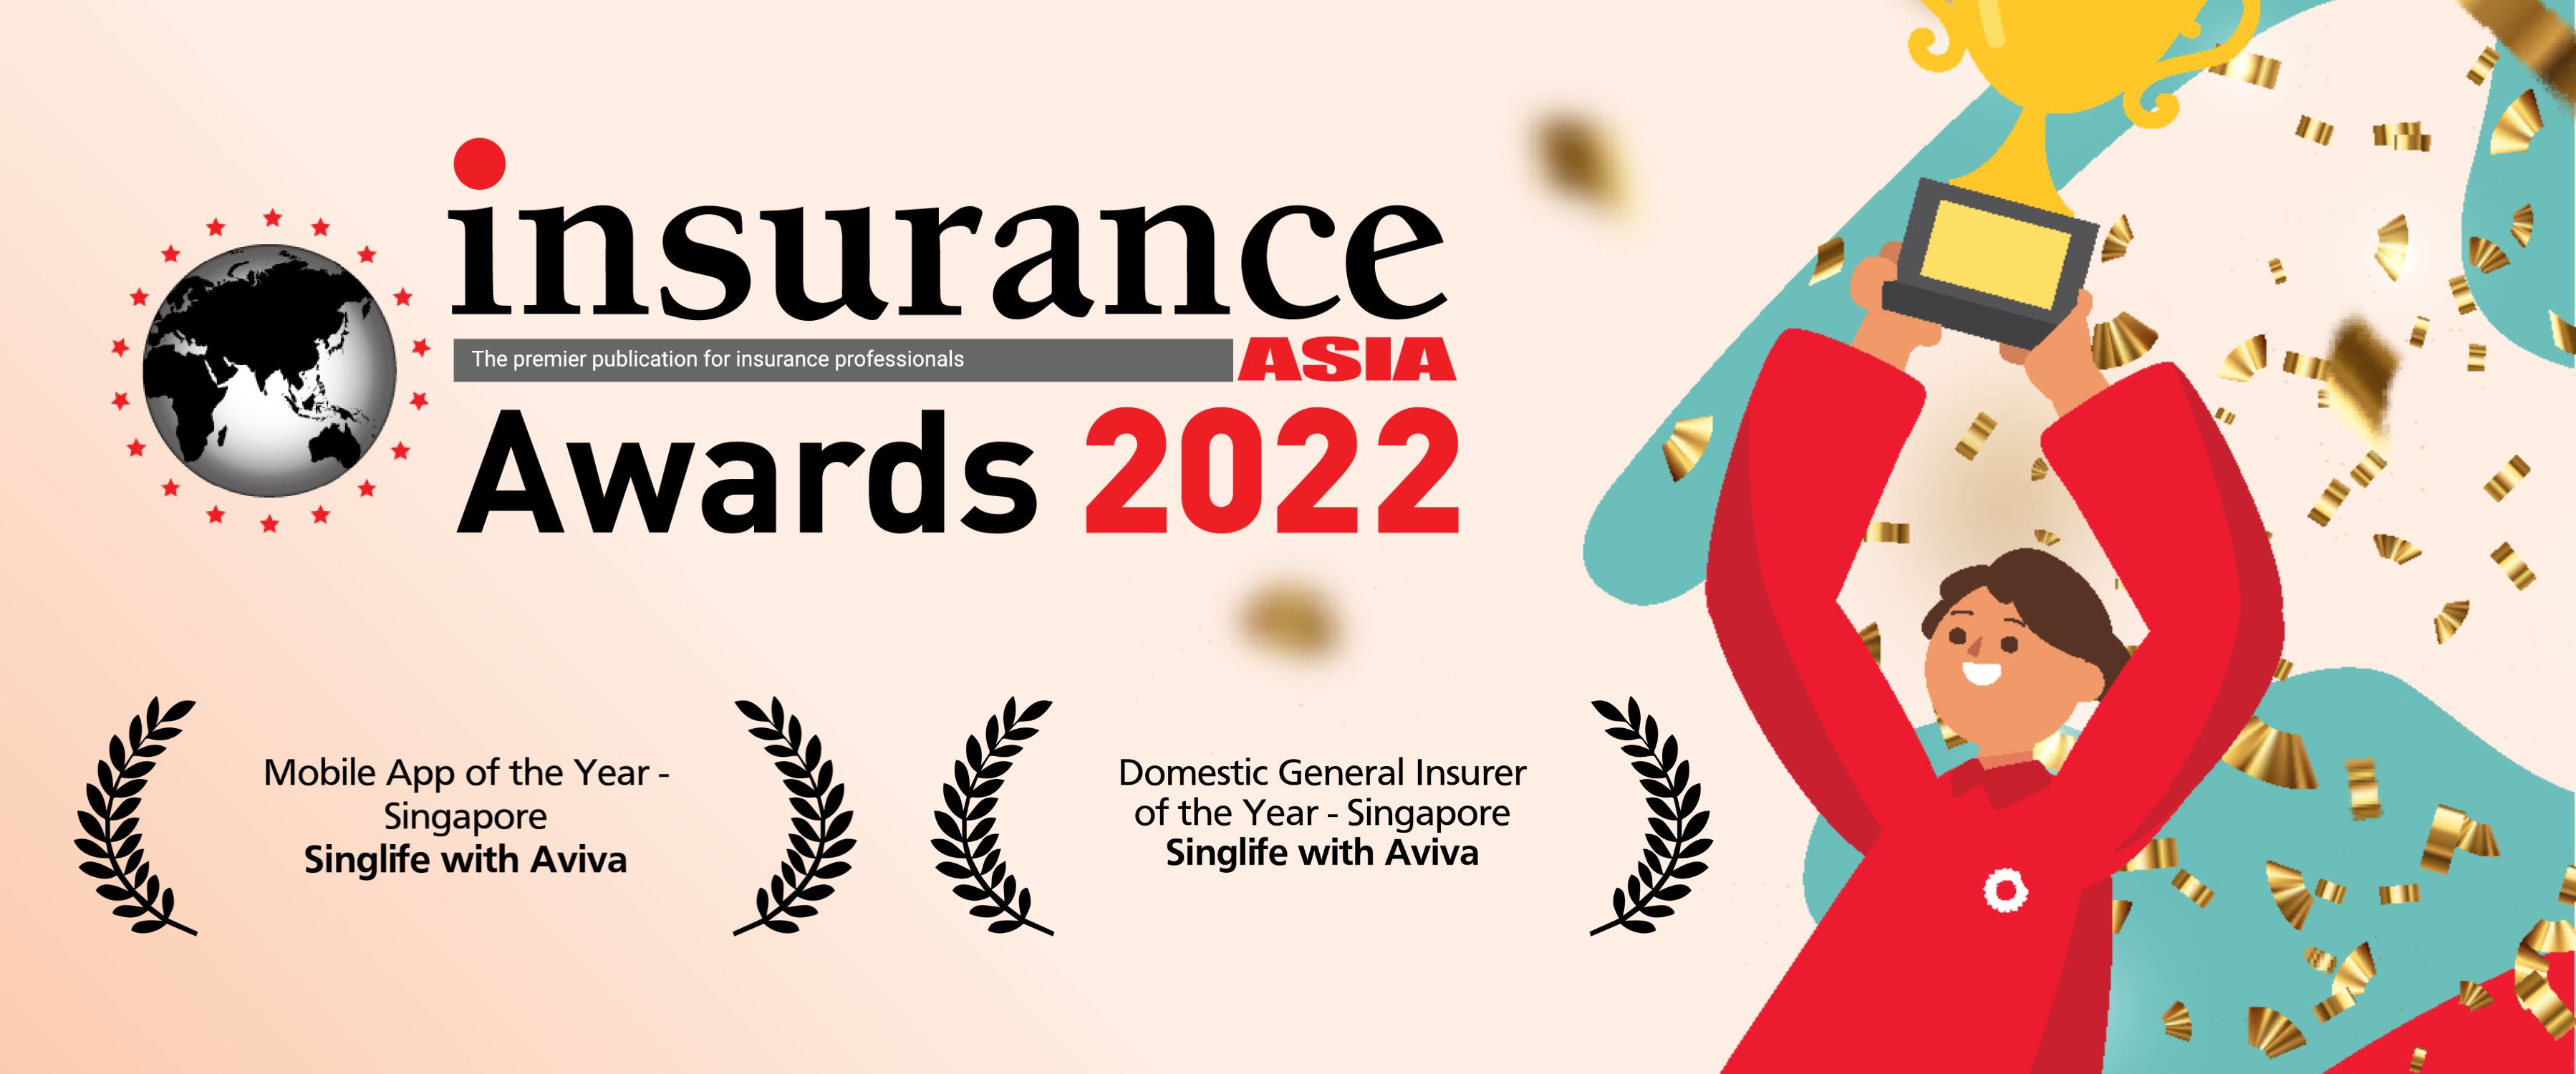 Image of Insurance Asia Awards logo